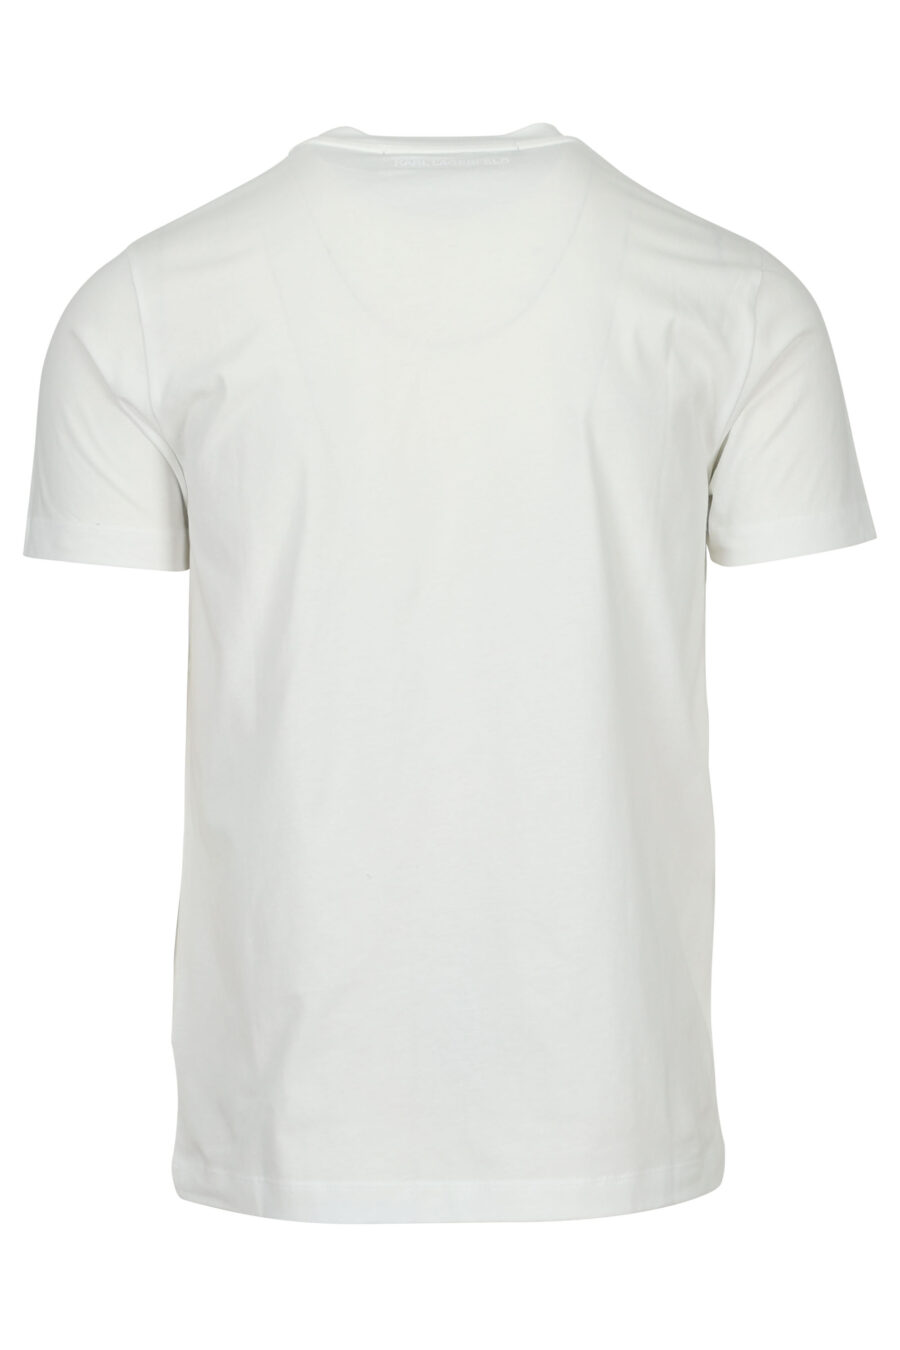 Camiseta blanca con maxilogo "rue st guillaume" en degradé - 4062226962360 1